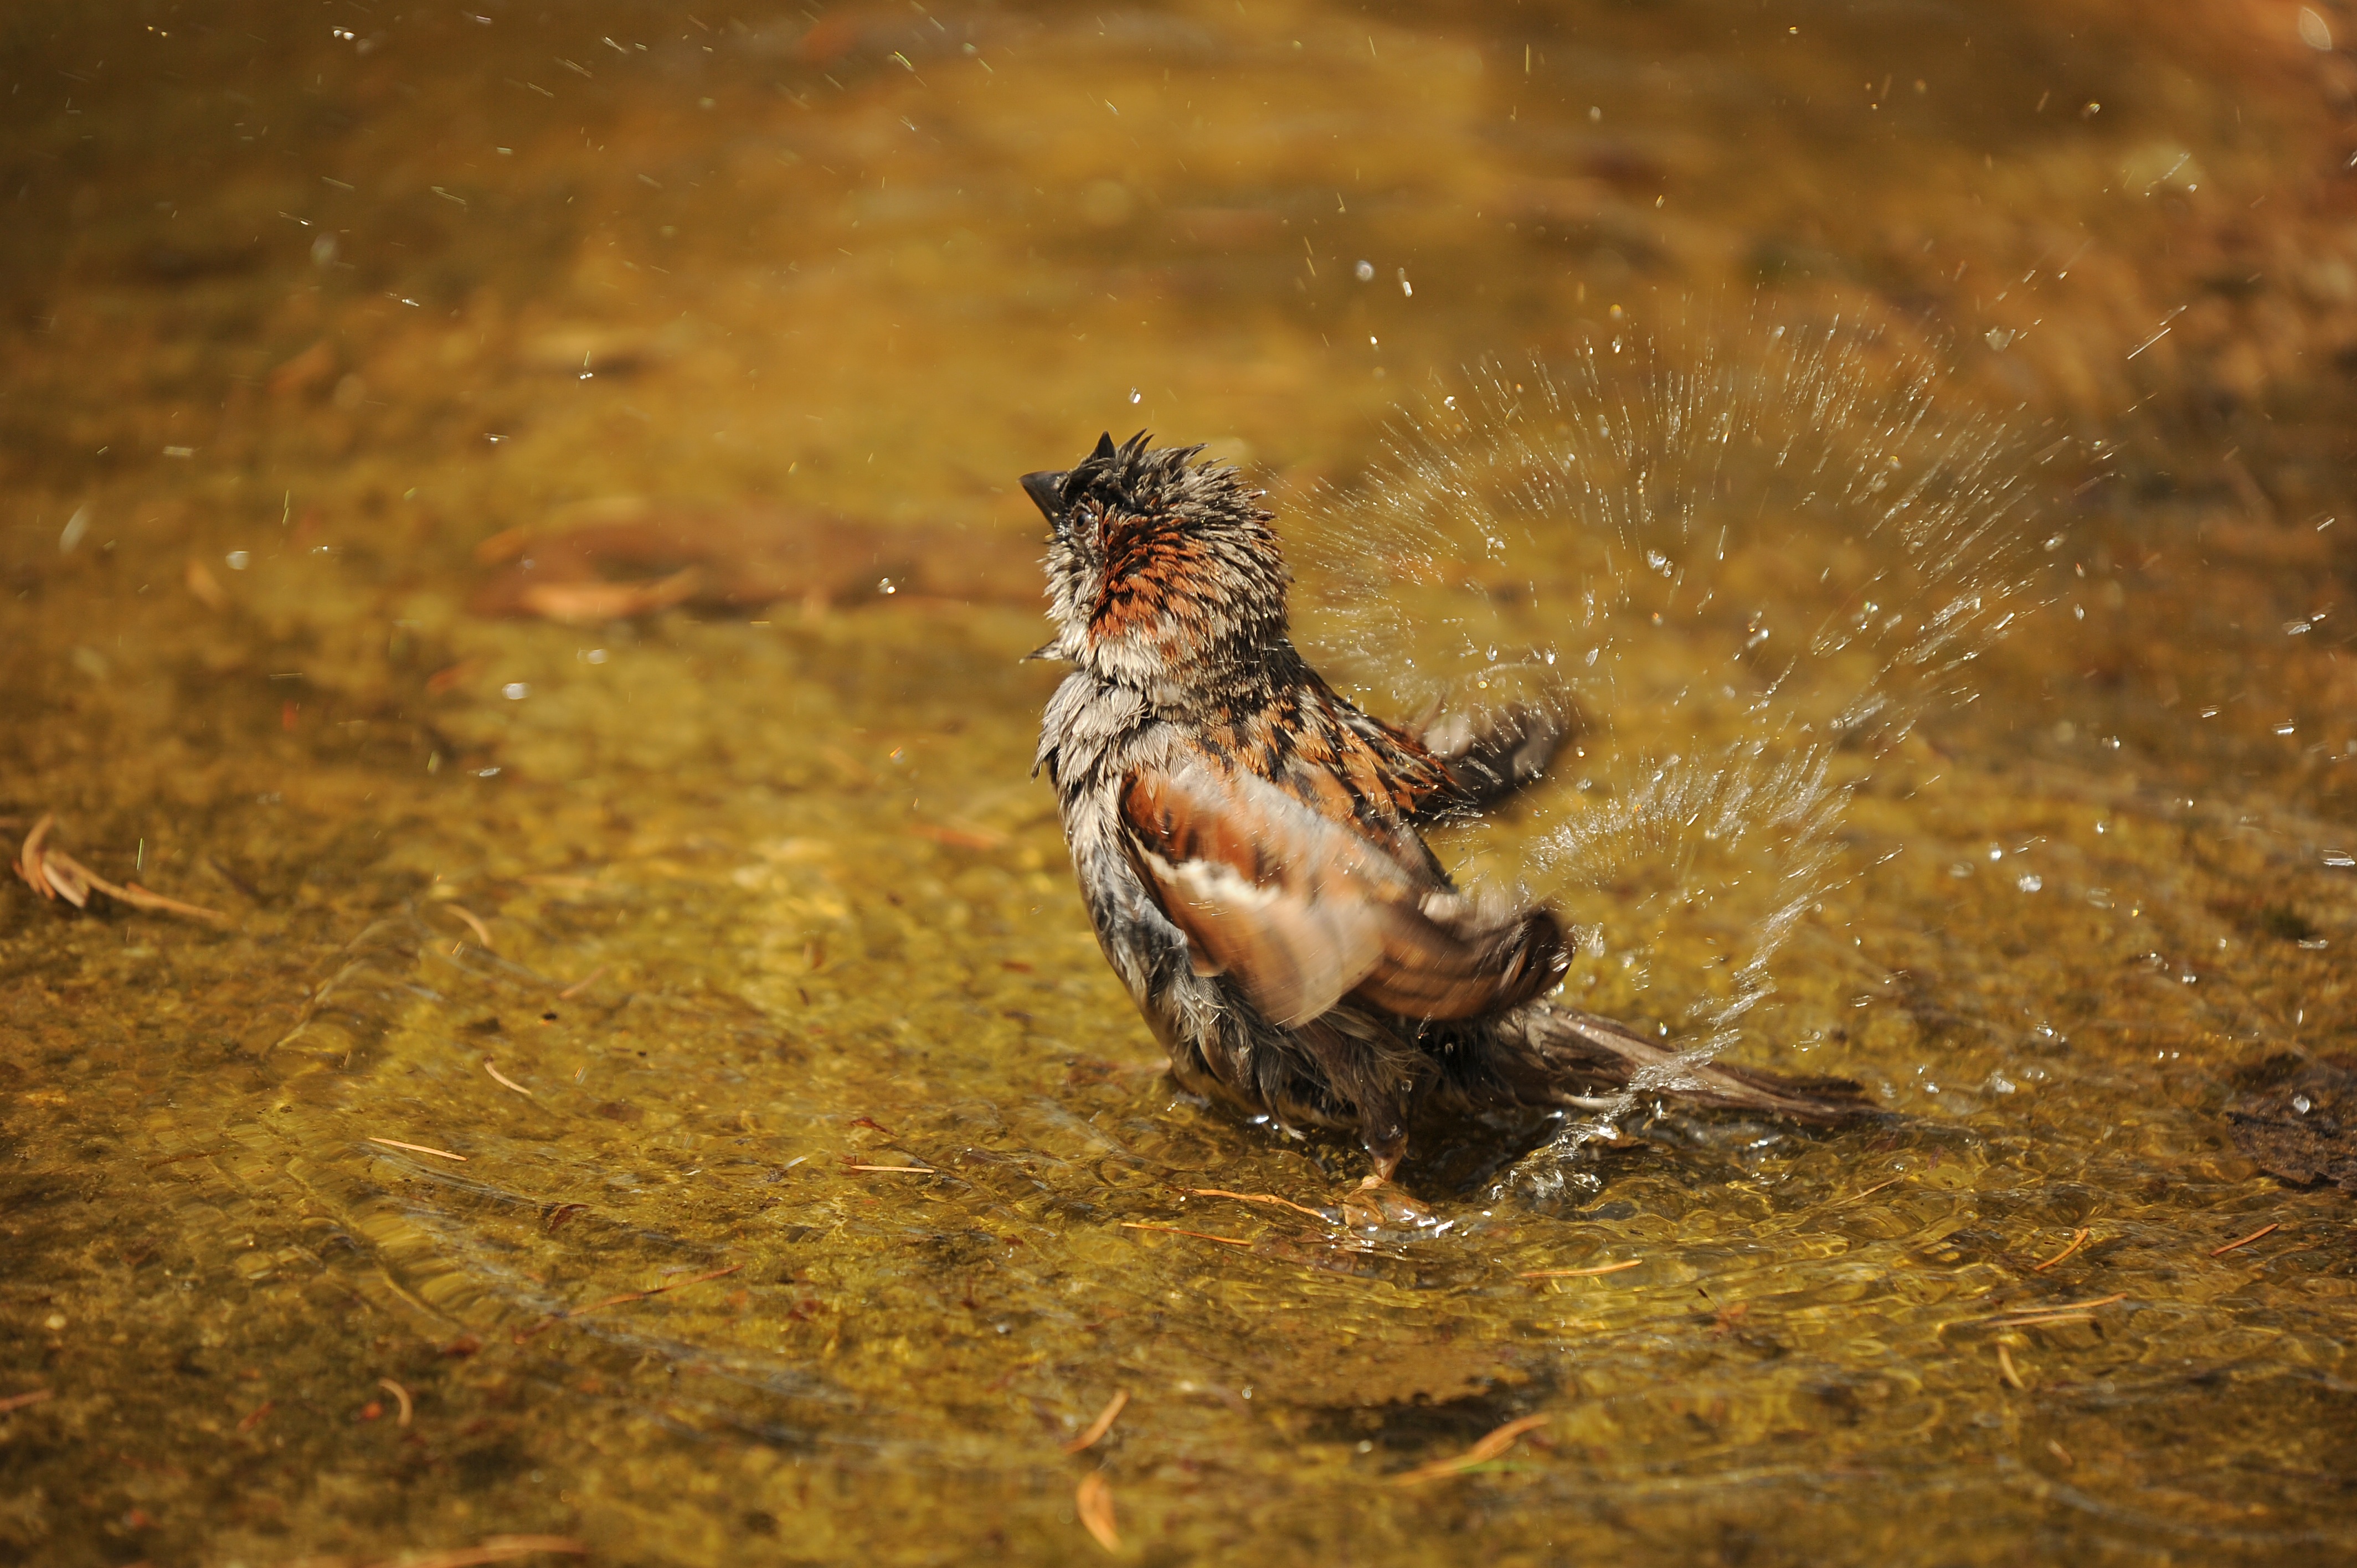 Мокрая птичка умывается в воде · бесплатная фотография от Fonwall